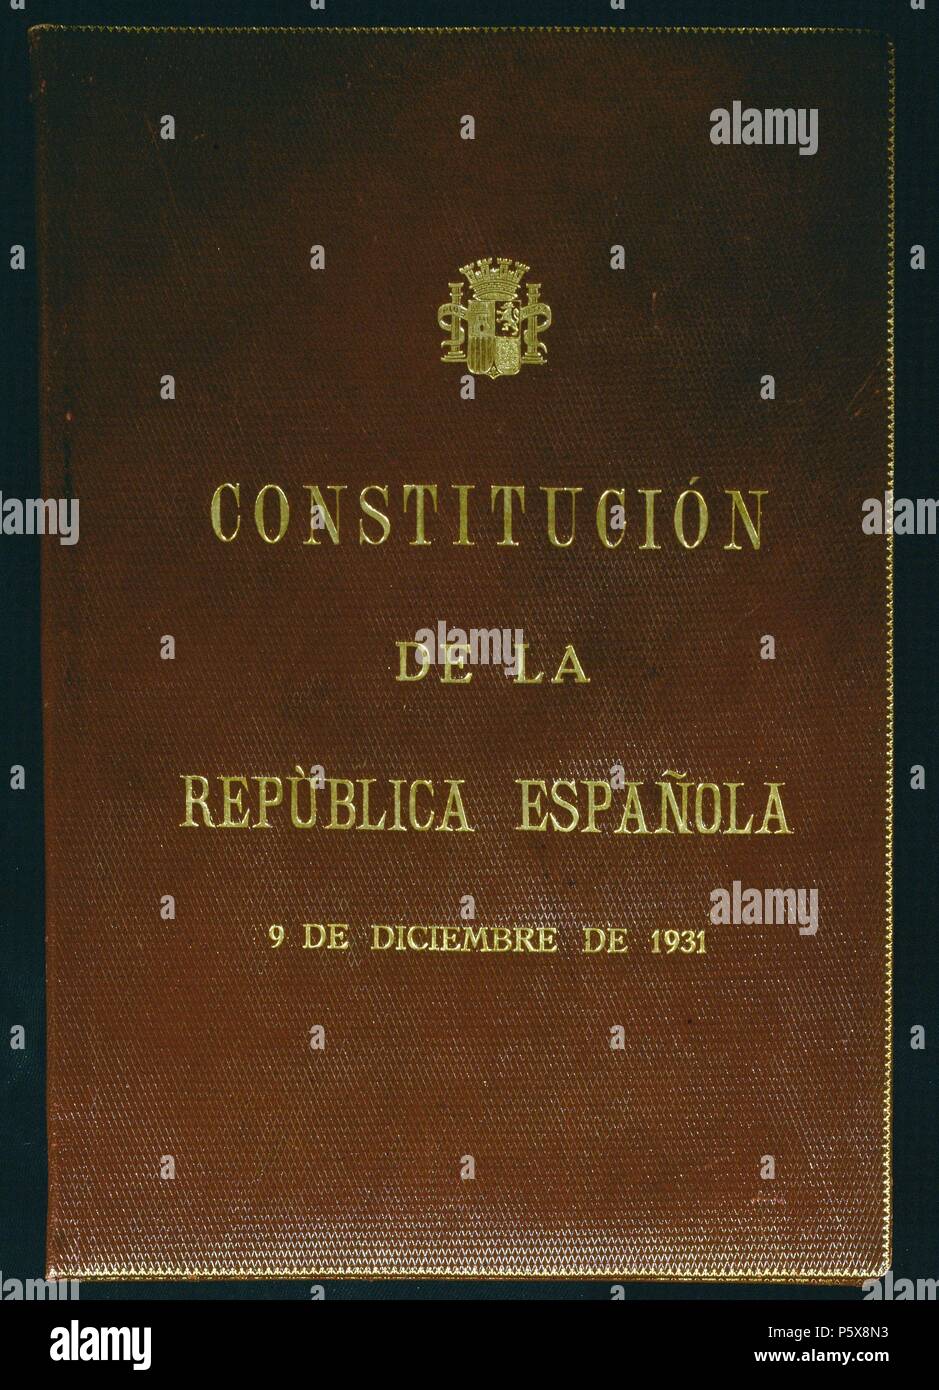 ENCUADERNACION-CONSTITUCION DE LA II REPUBLICA ESPAÑOLA 9 DICIEMBRE 1931. Location: CONGRESO DE LOS DIPUTADOS-BIBLIOTECA, MADRID, SPAIN. Stock Photo